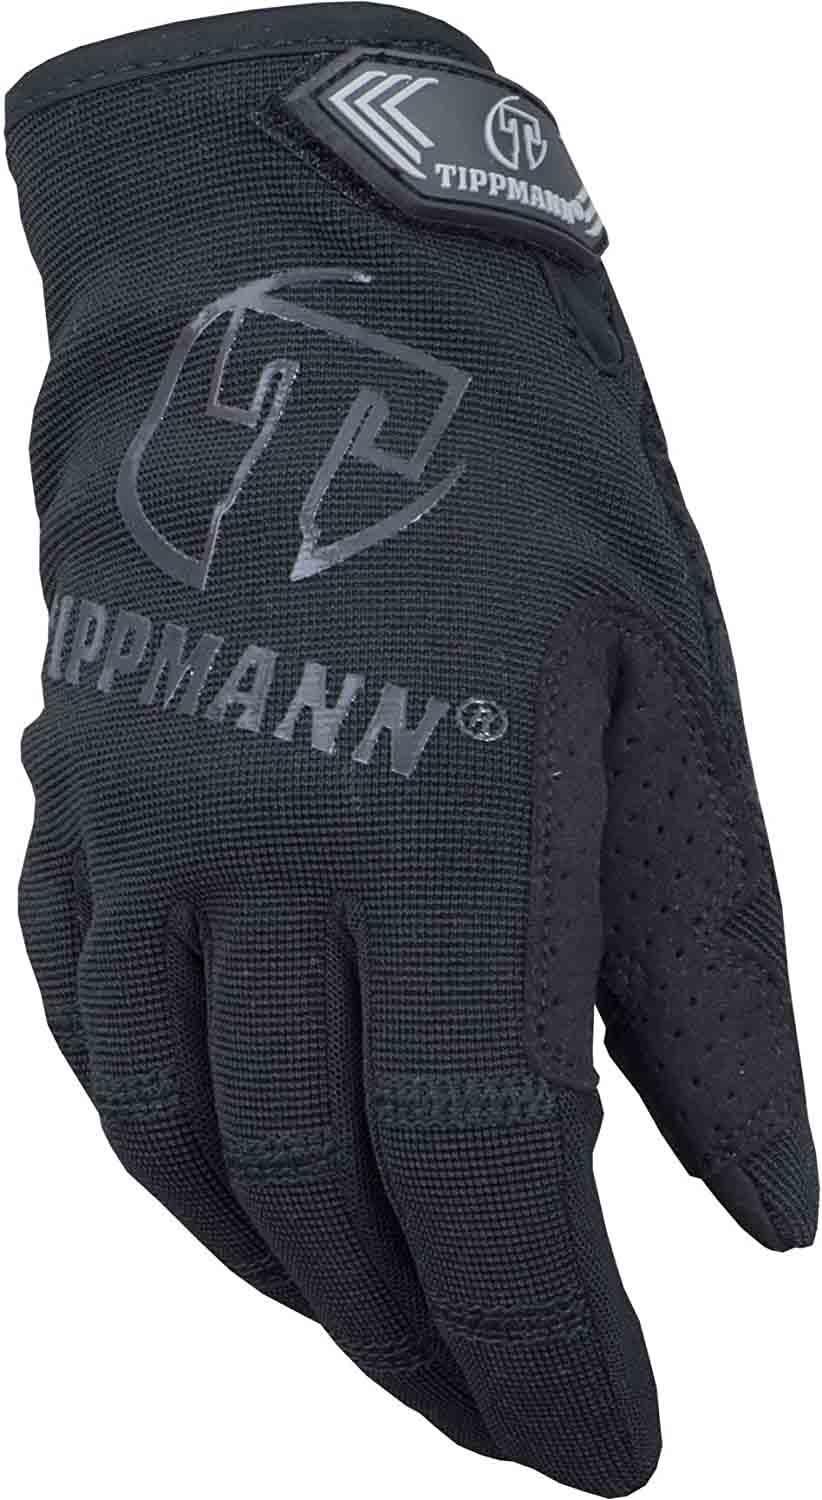 Tippmann Snipper tactical paintball glove